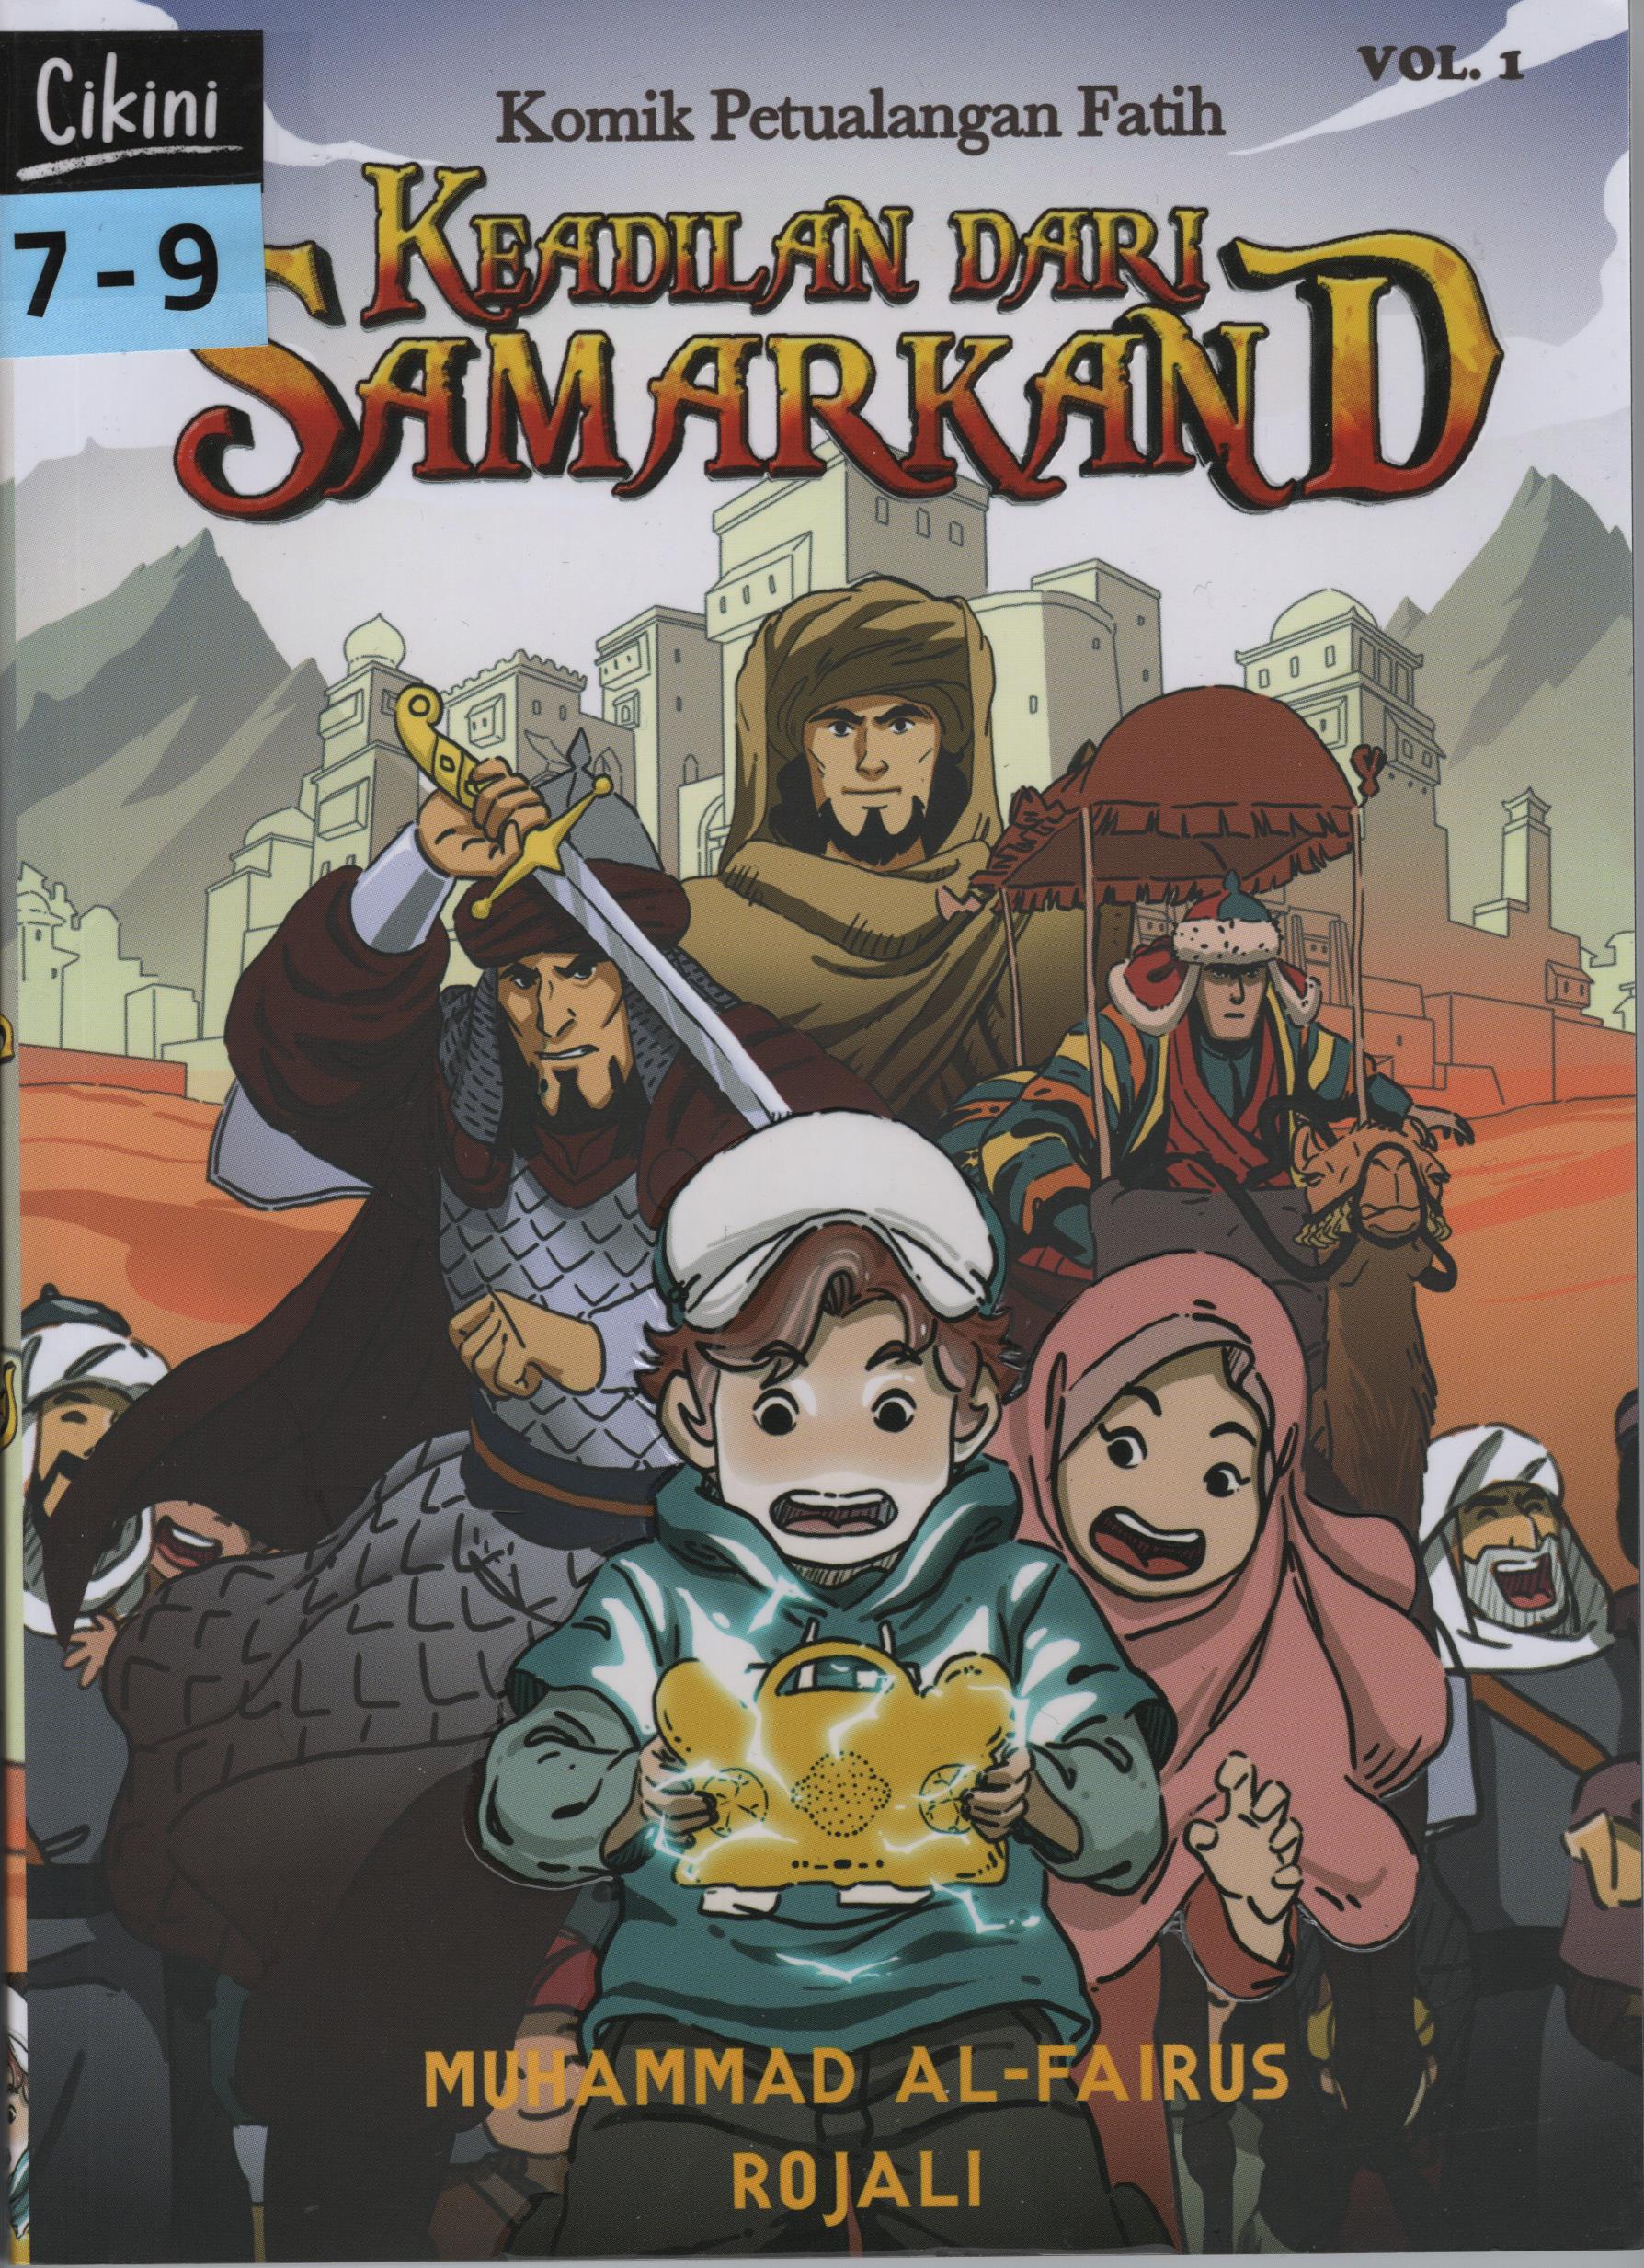 Komik petualangan Fatih 1 : keadilan dari Samarkand